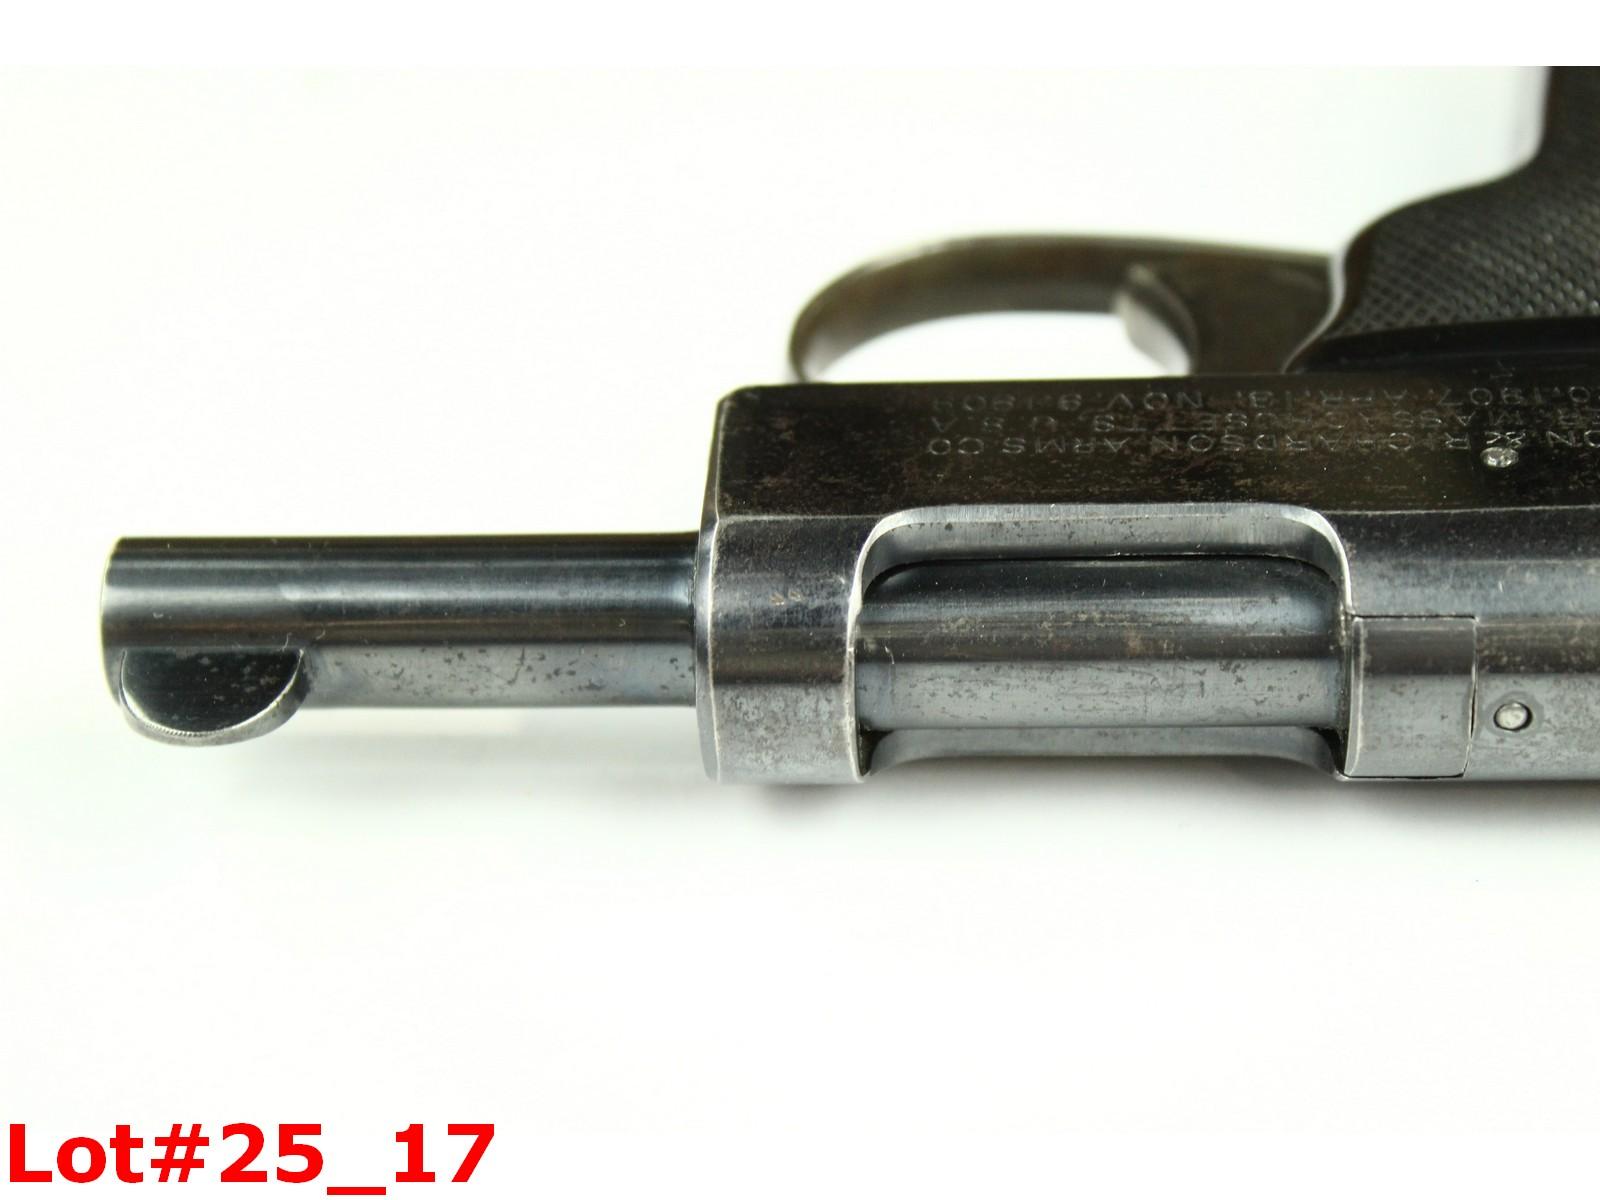 H&R Model 1907 Self Loading 32 Caliber Pistol